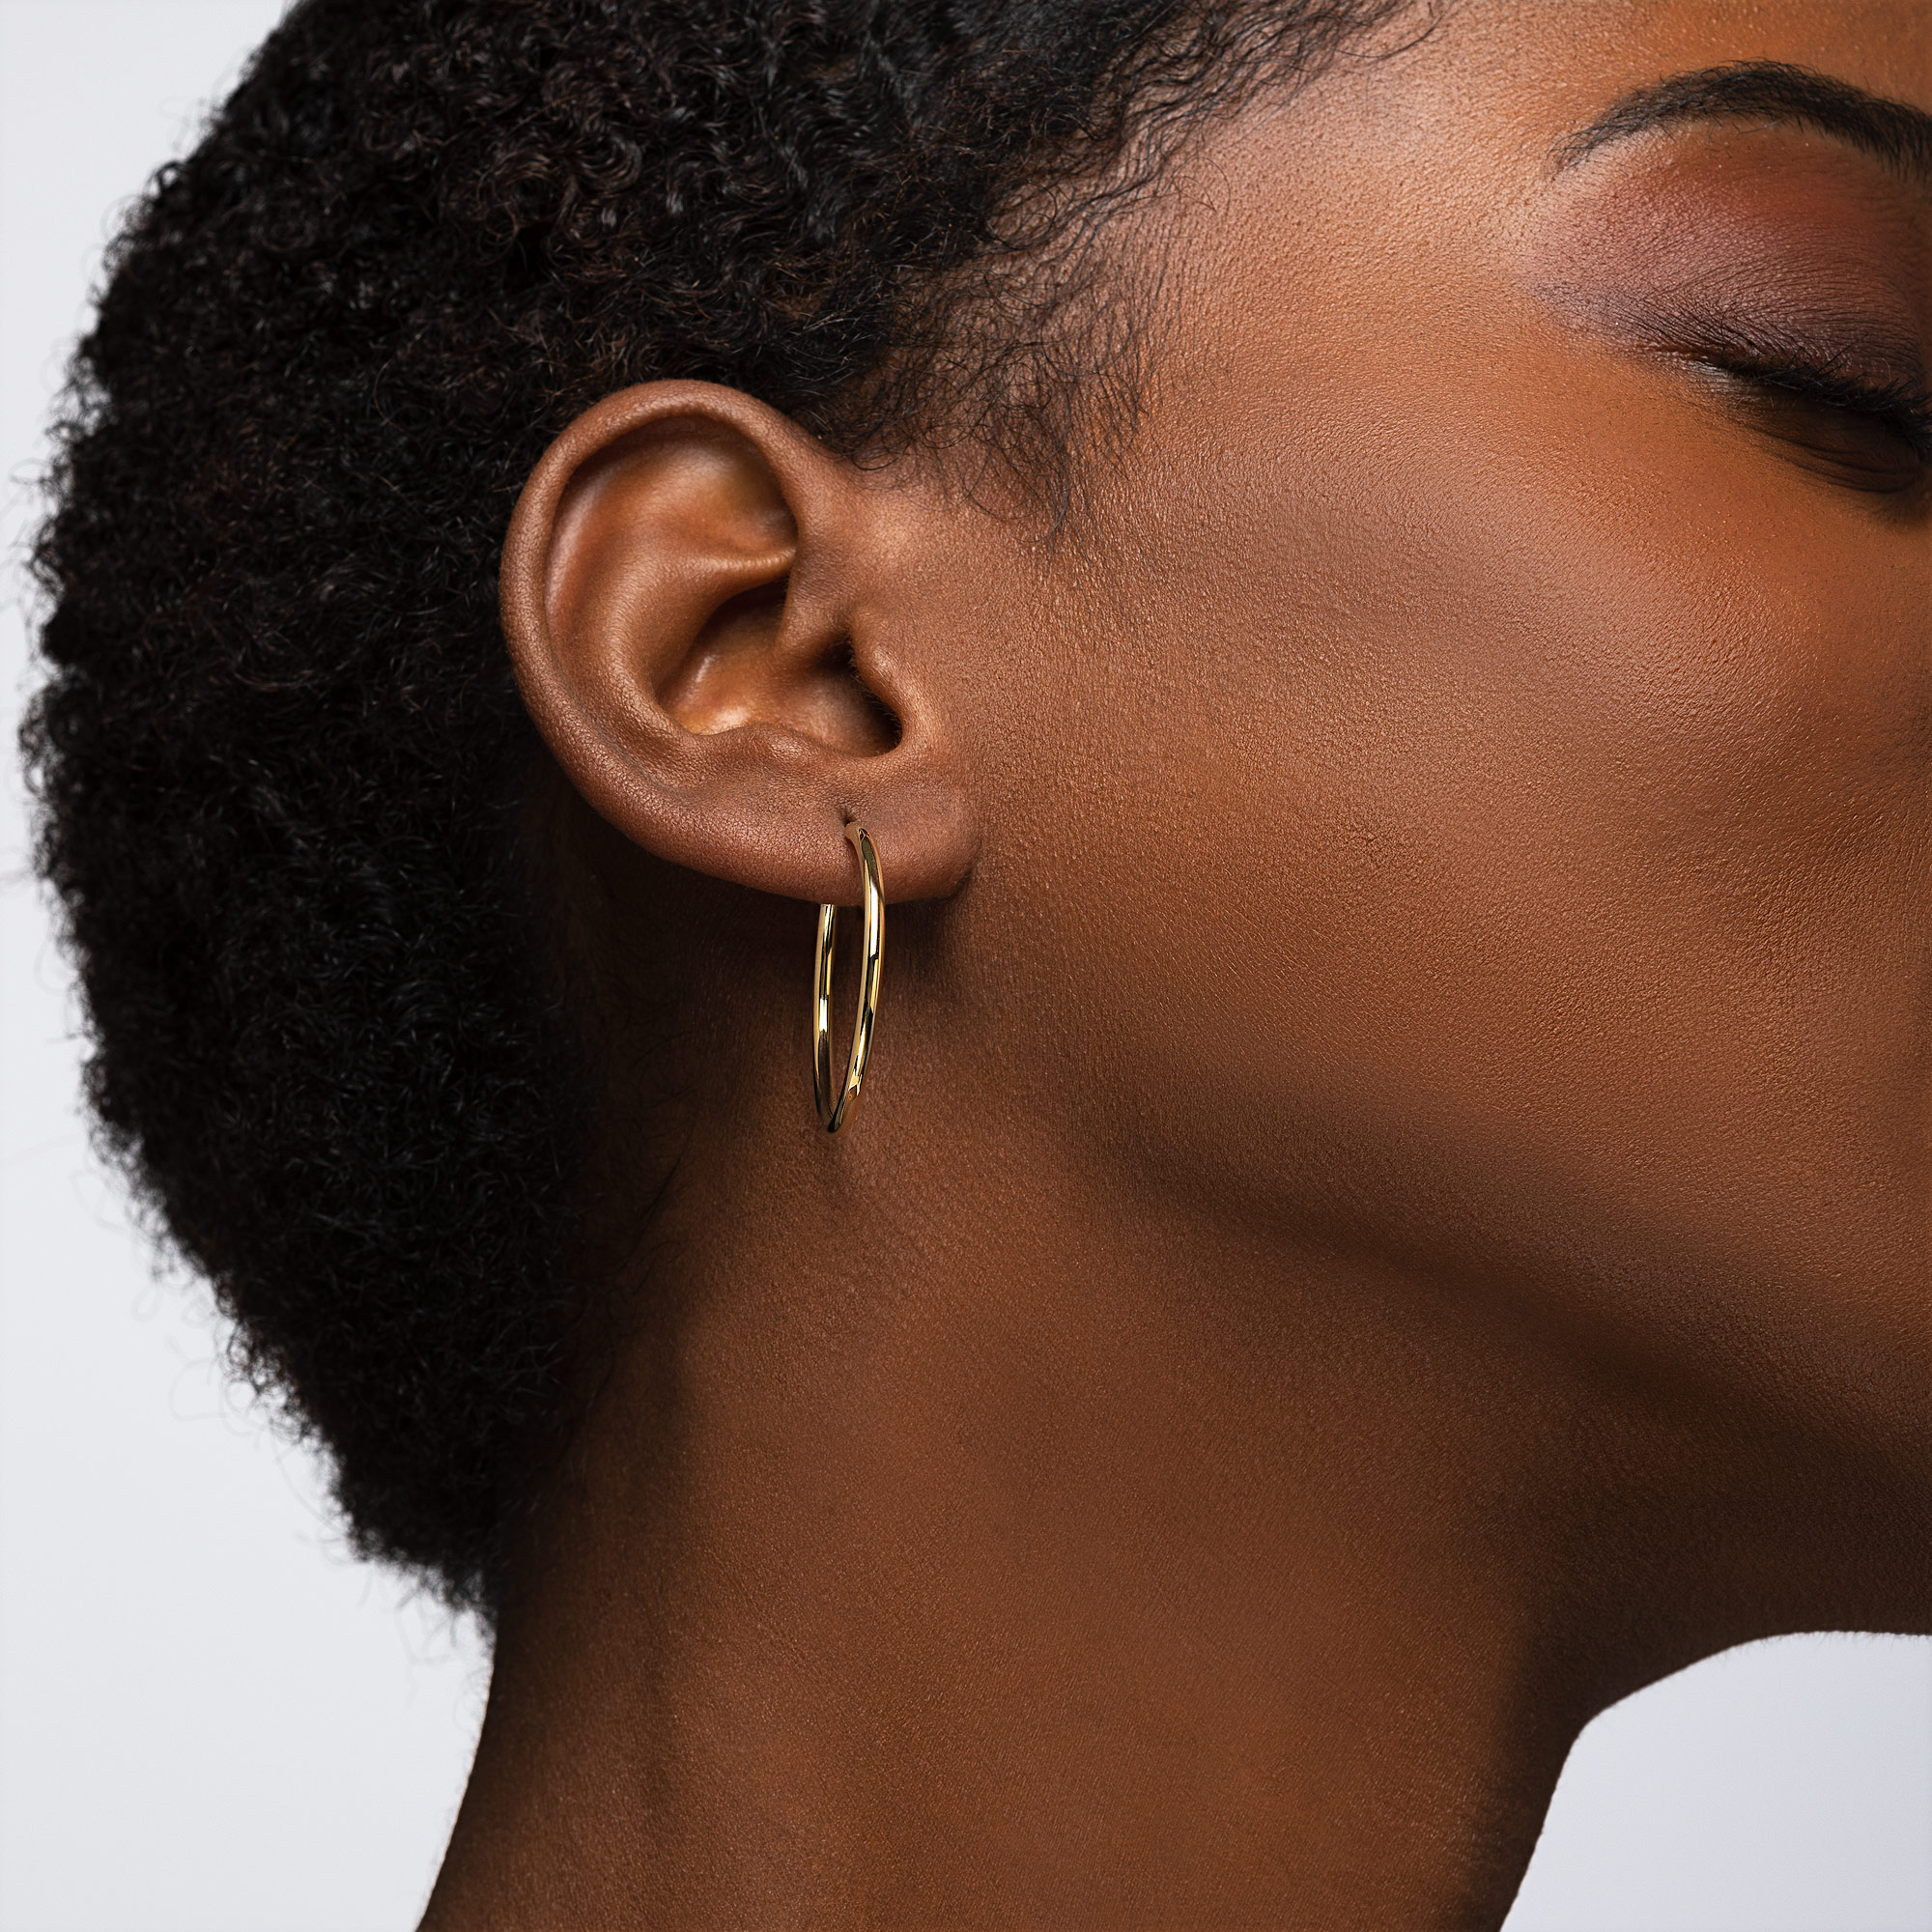 10k Gold Hoop Earrings Women’s 47mm Brushed accents - Arracadas en oro